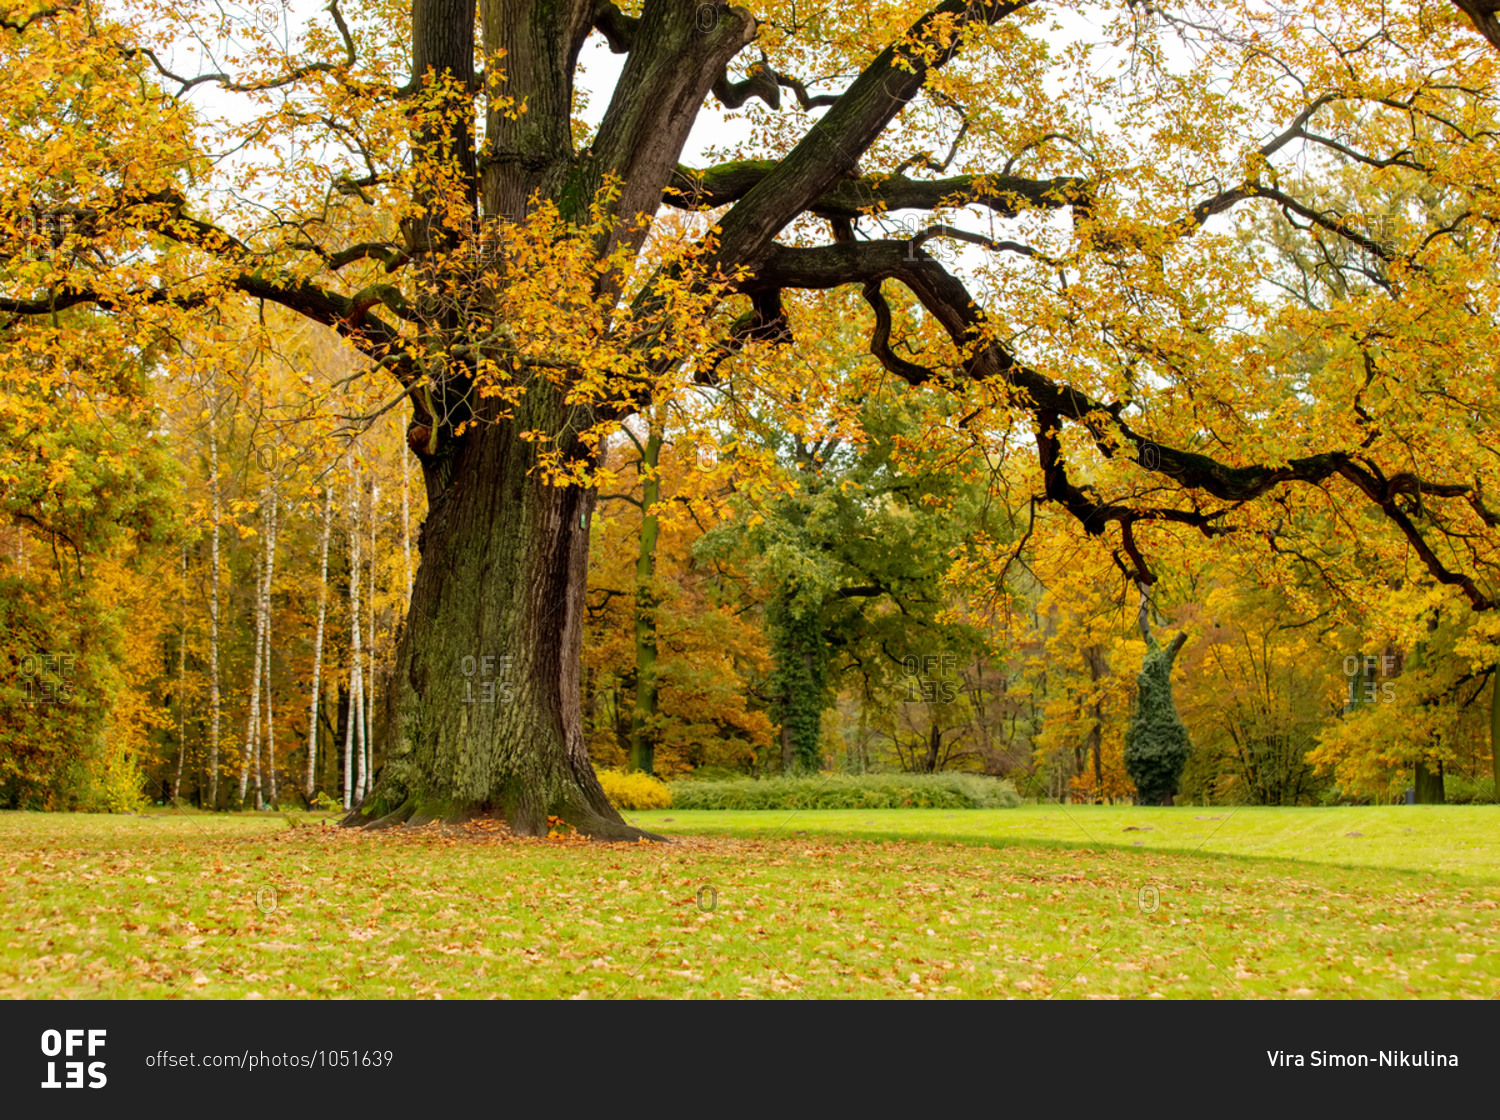 Old oak tree in a park in autumn